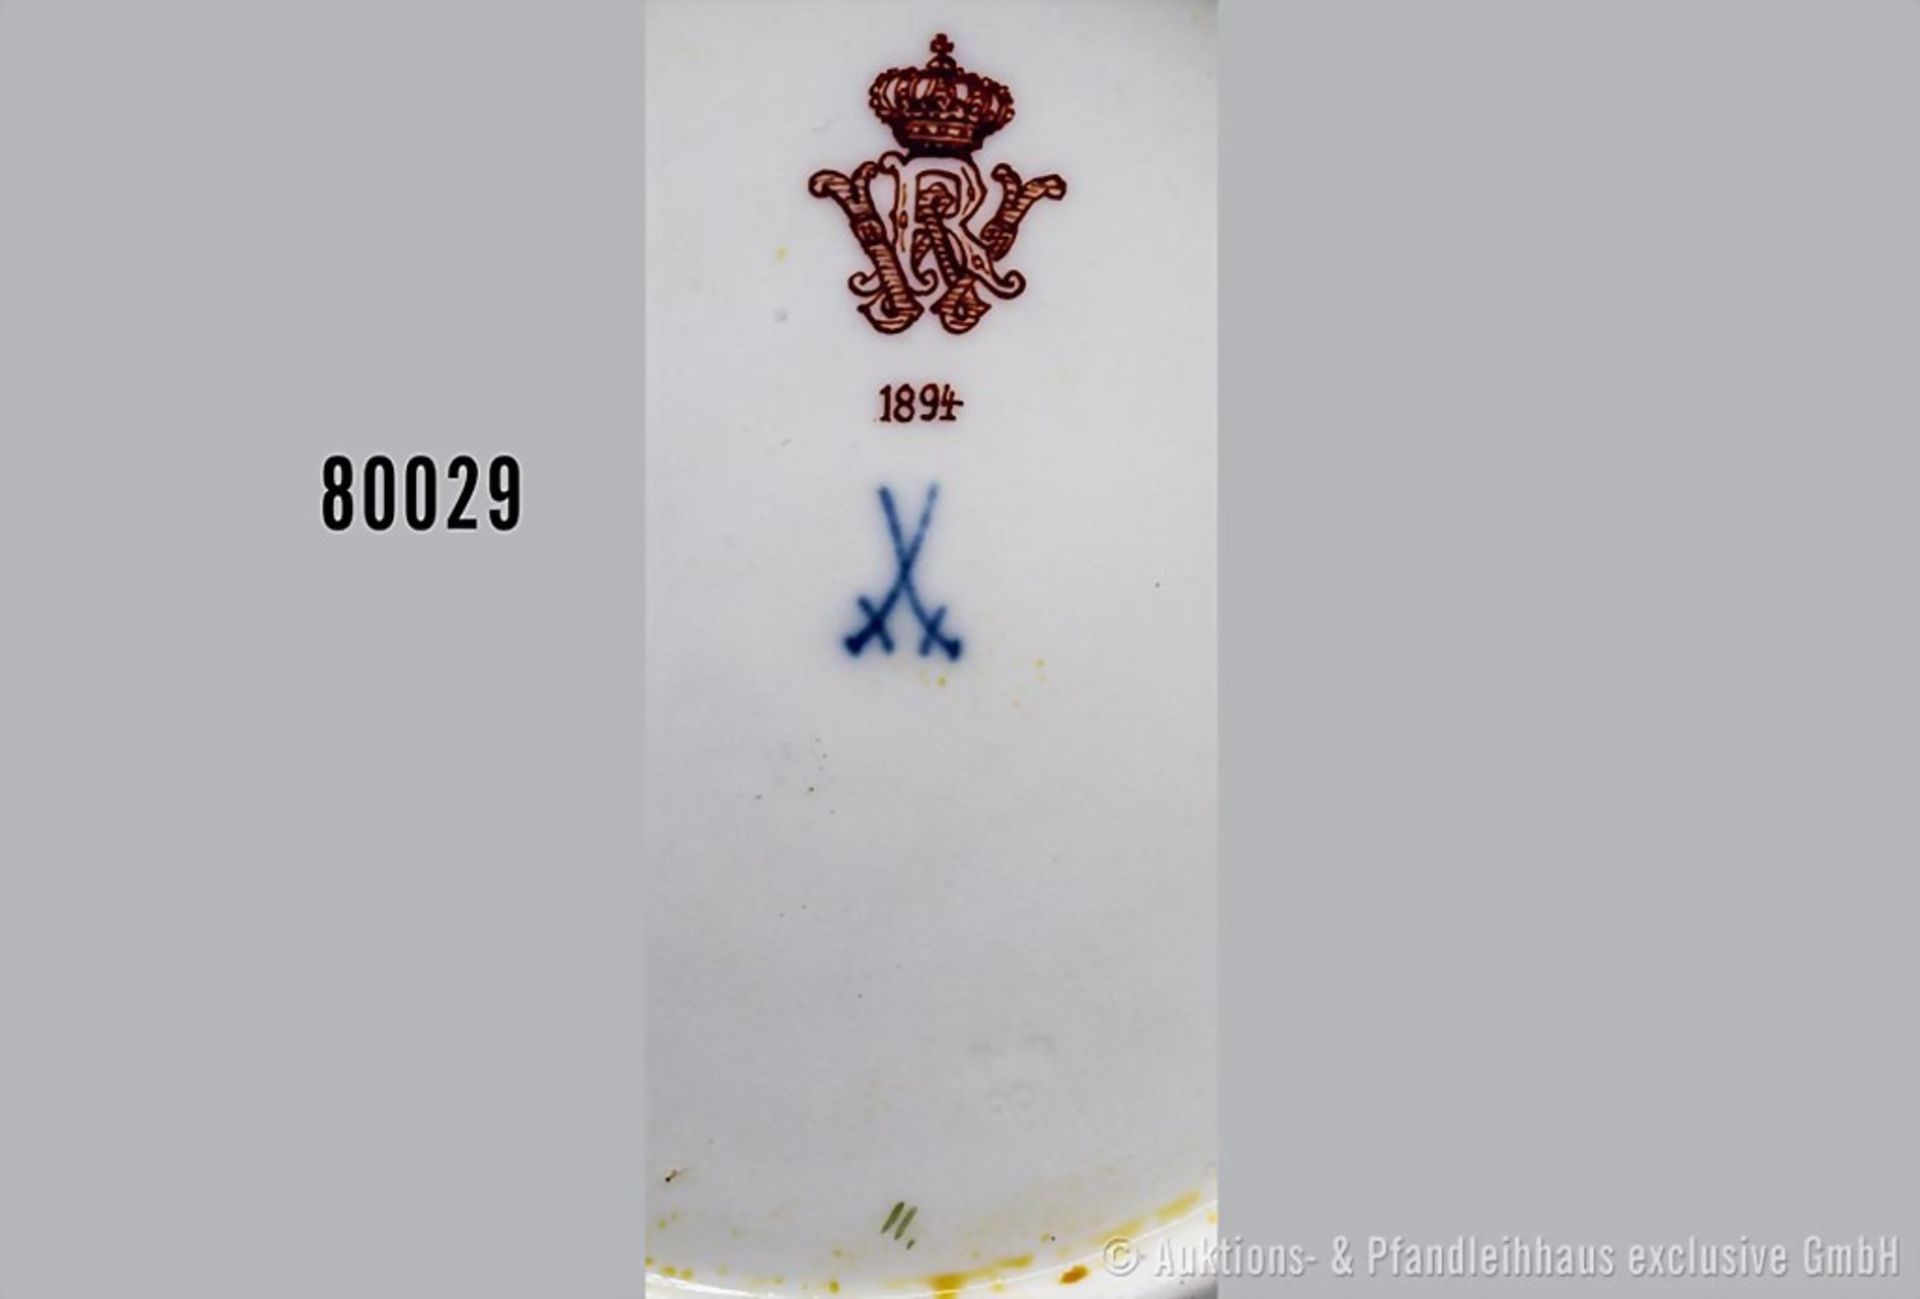 Konv. Porzellan Kuchenteller, D 20 cm und Untertasse, D 15 cm, Meissen, aus dem Service ... - Bild 3 aus 3